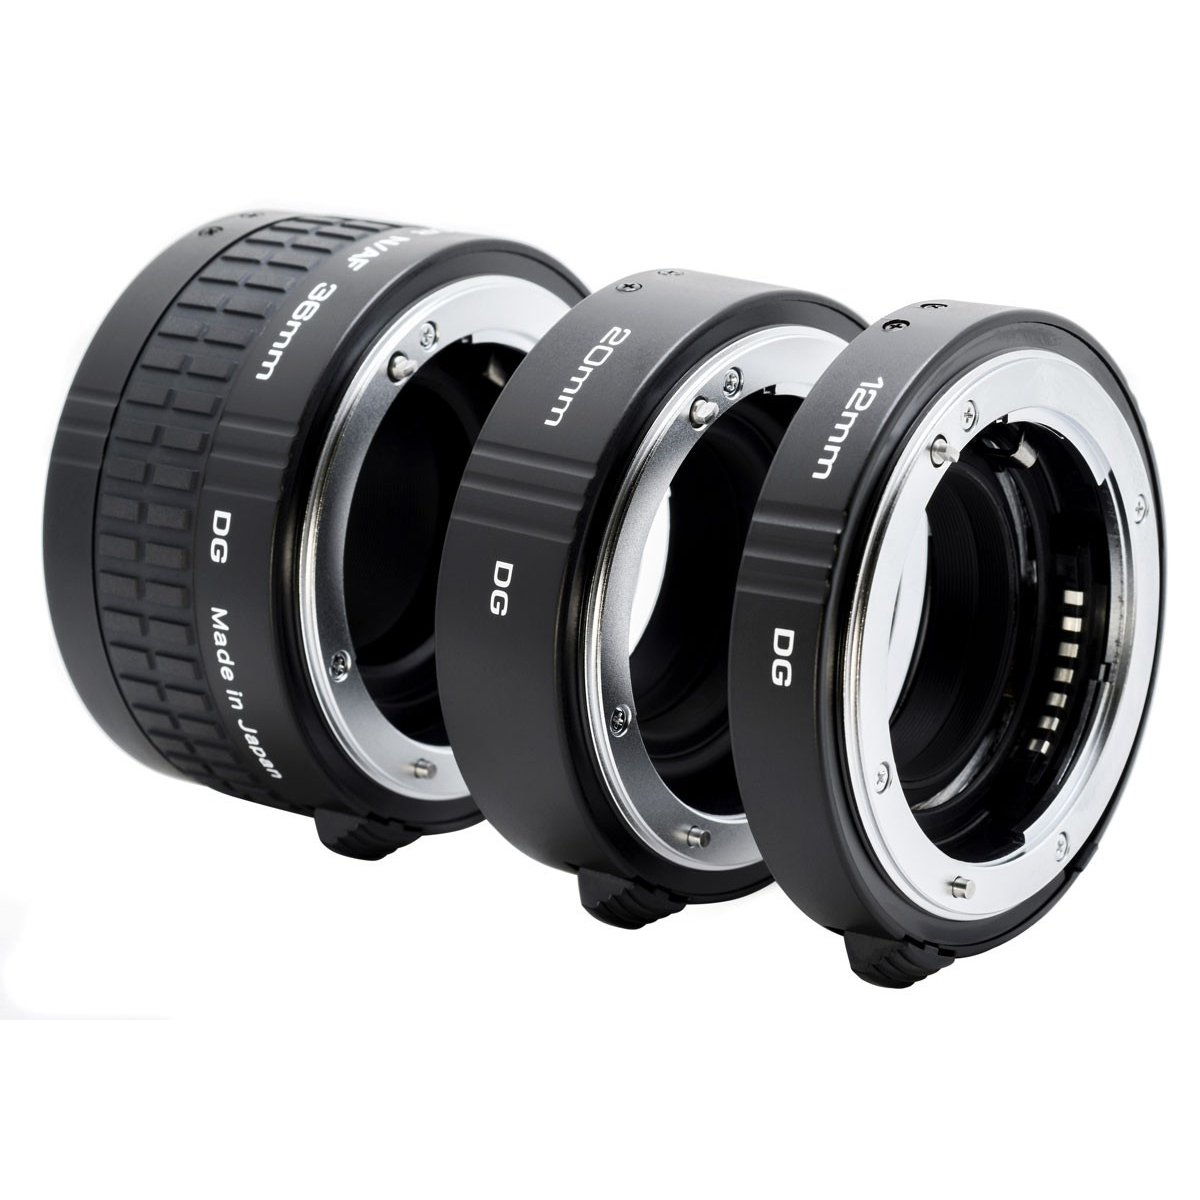 Tubos de extension automáticos Kenko DG, de 12mm, 20mm, 36mm, para Nikon F